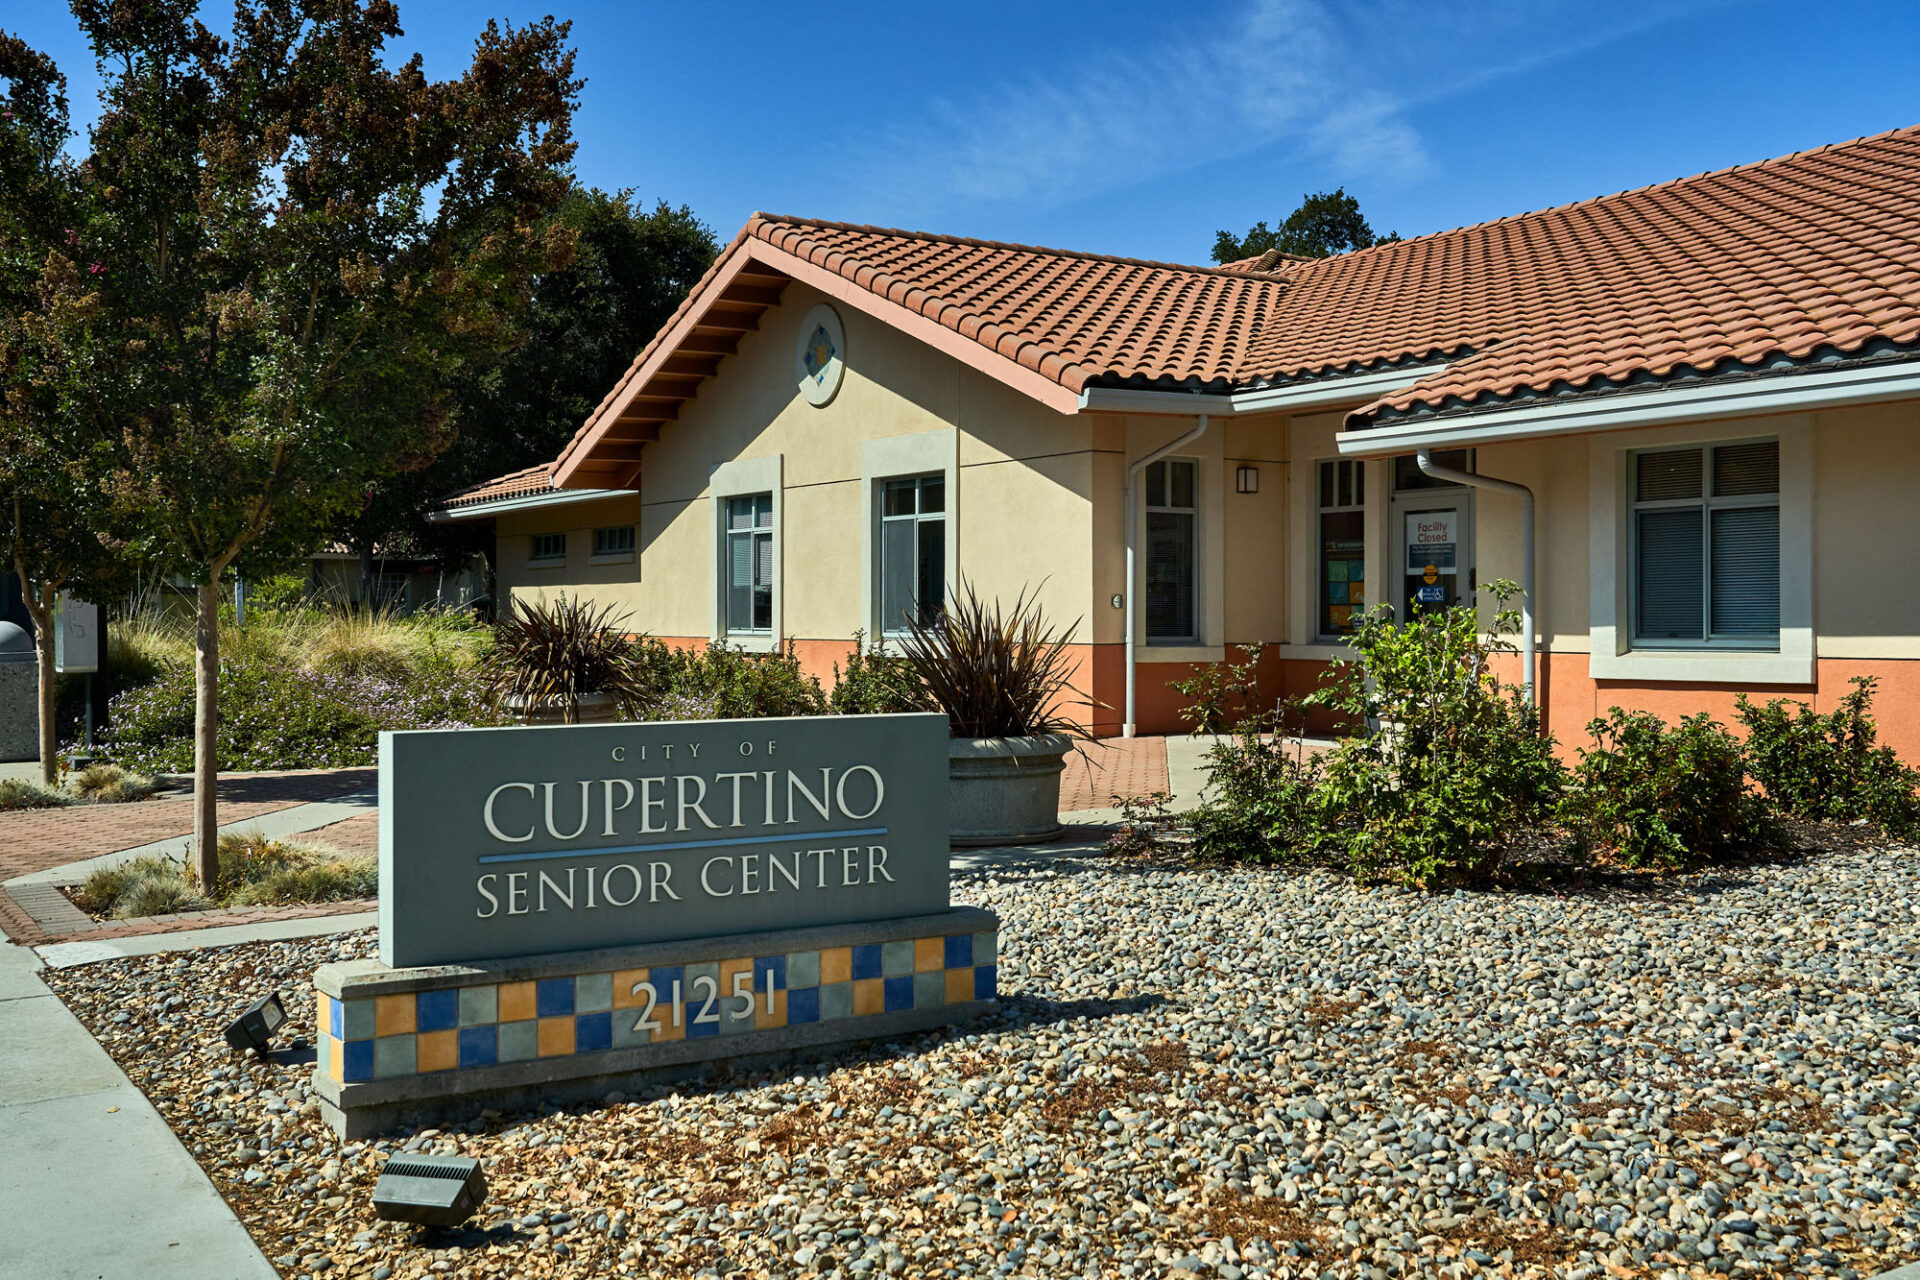 Cupertino Senior Center